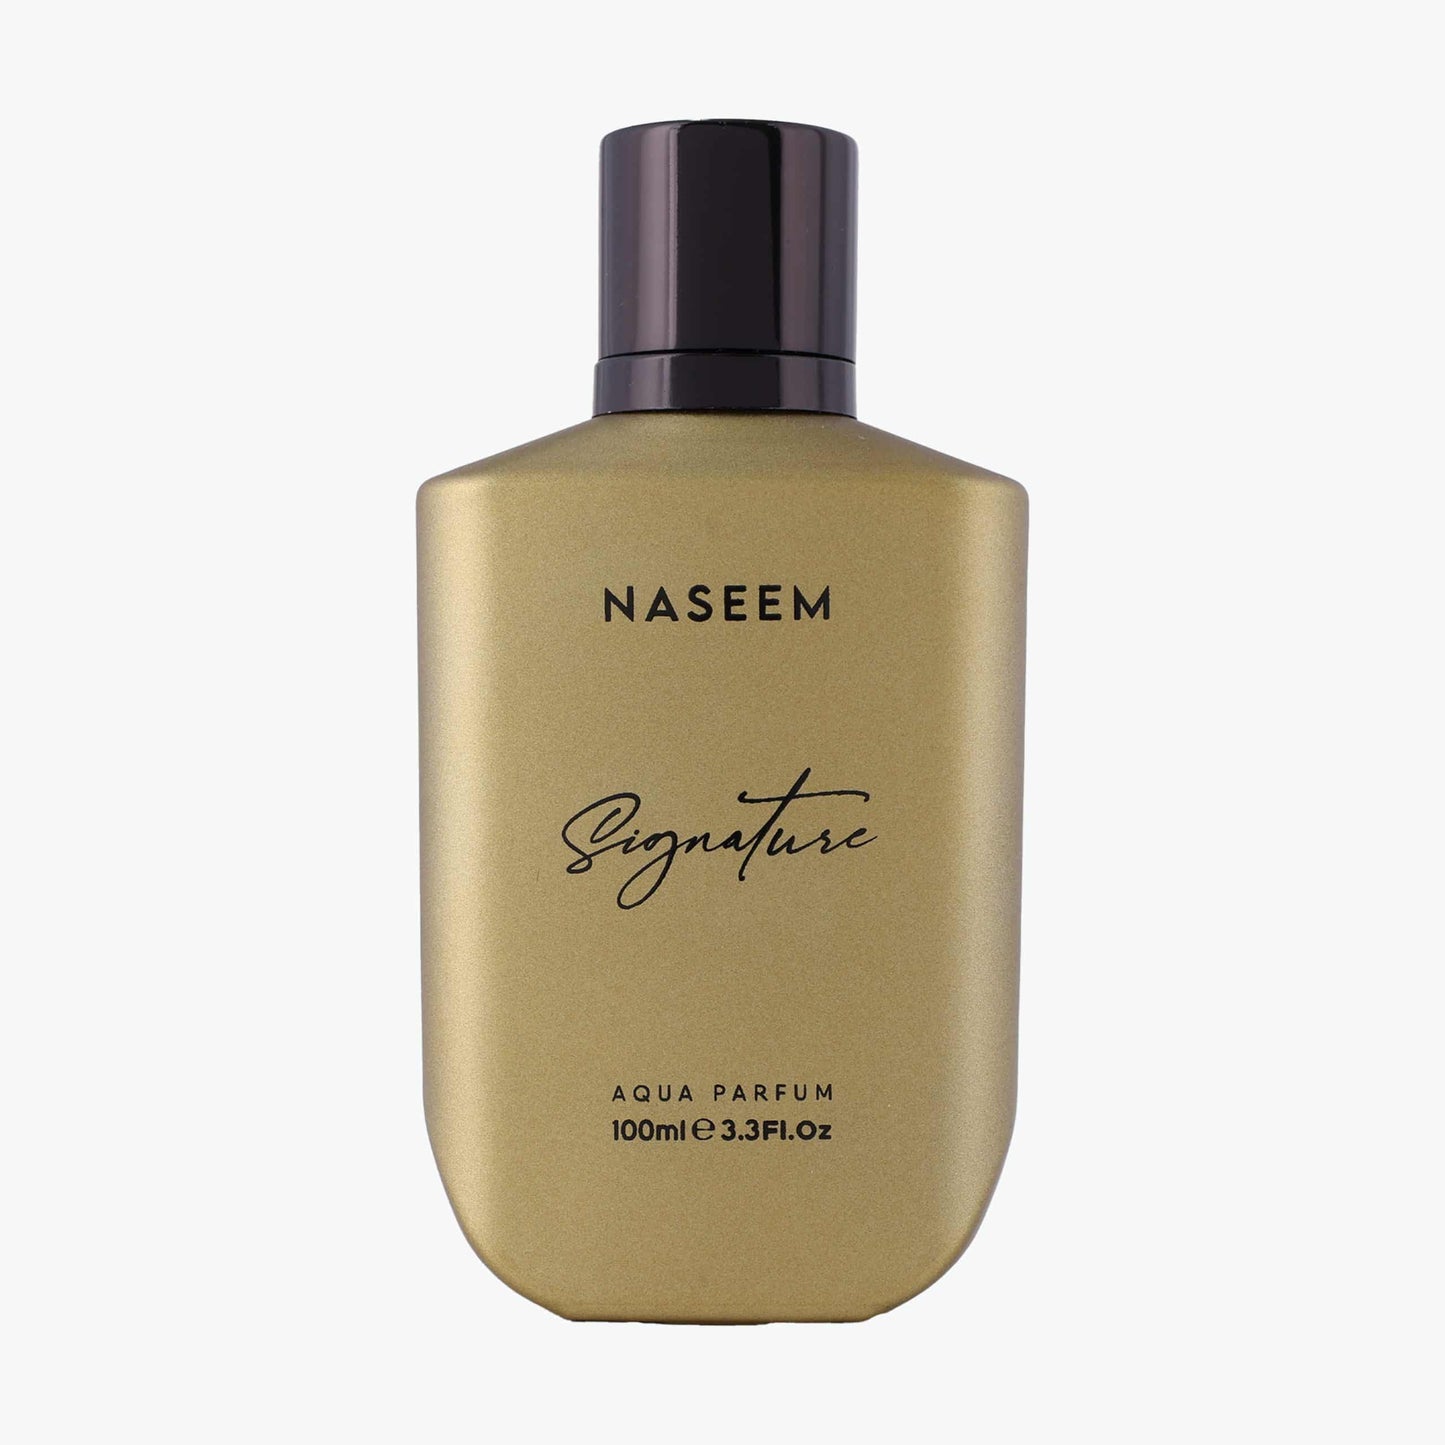 Signature Golden aqua parfum 100ml (SIN ALCOHOL) NASSEM